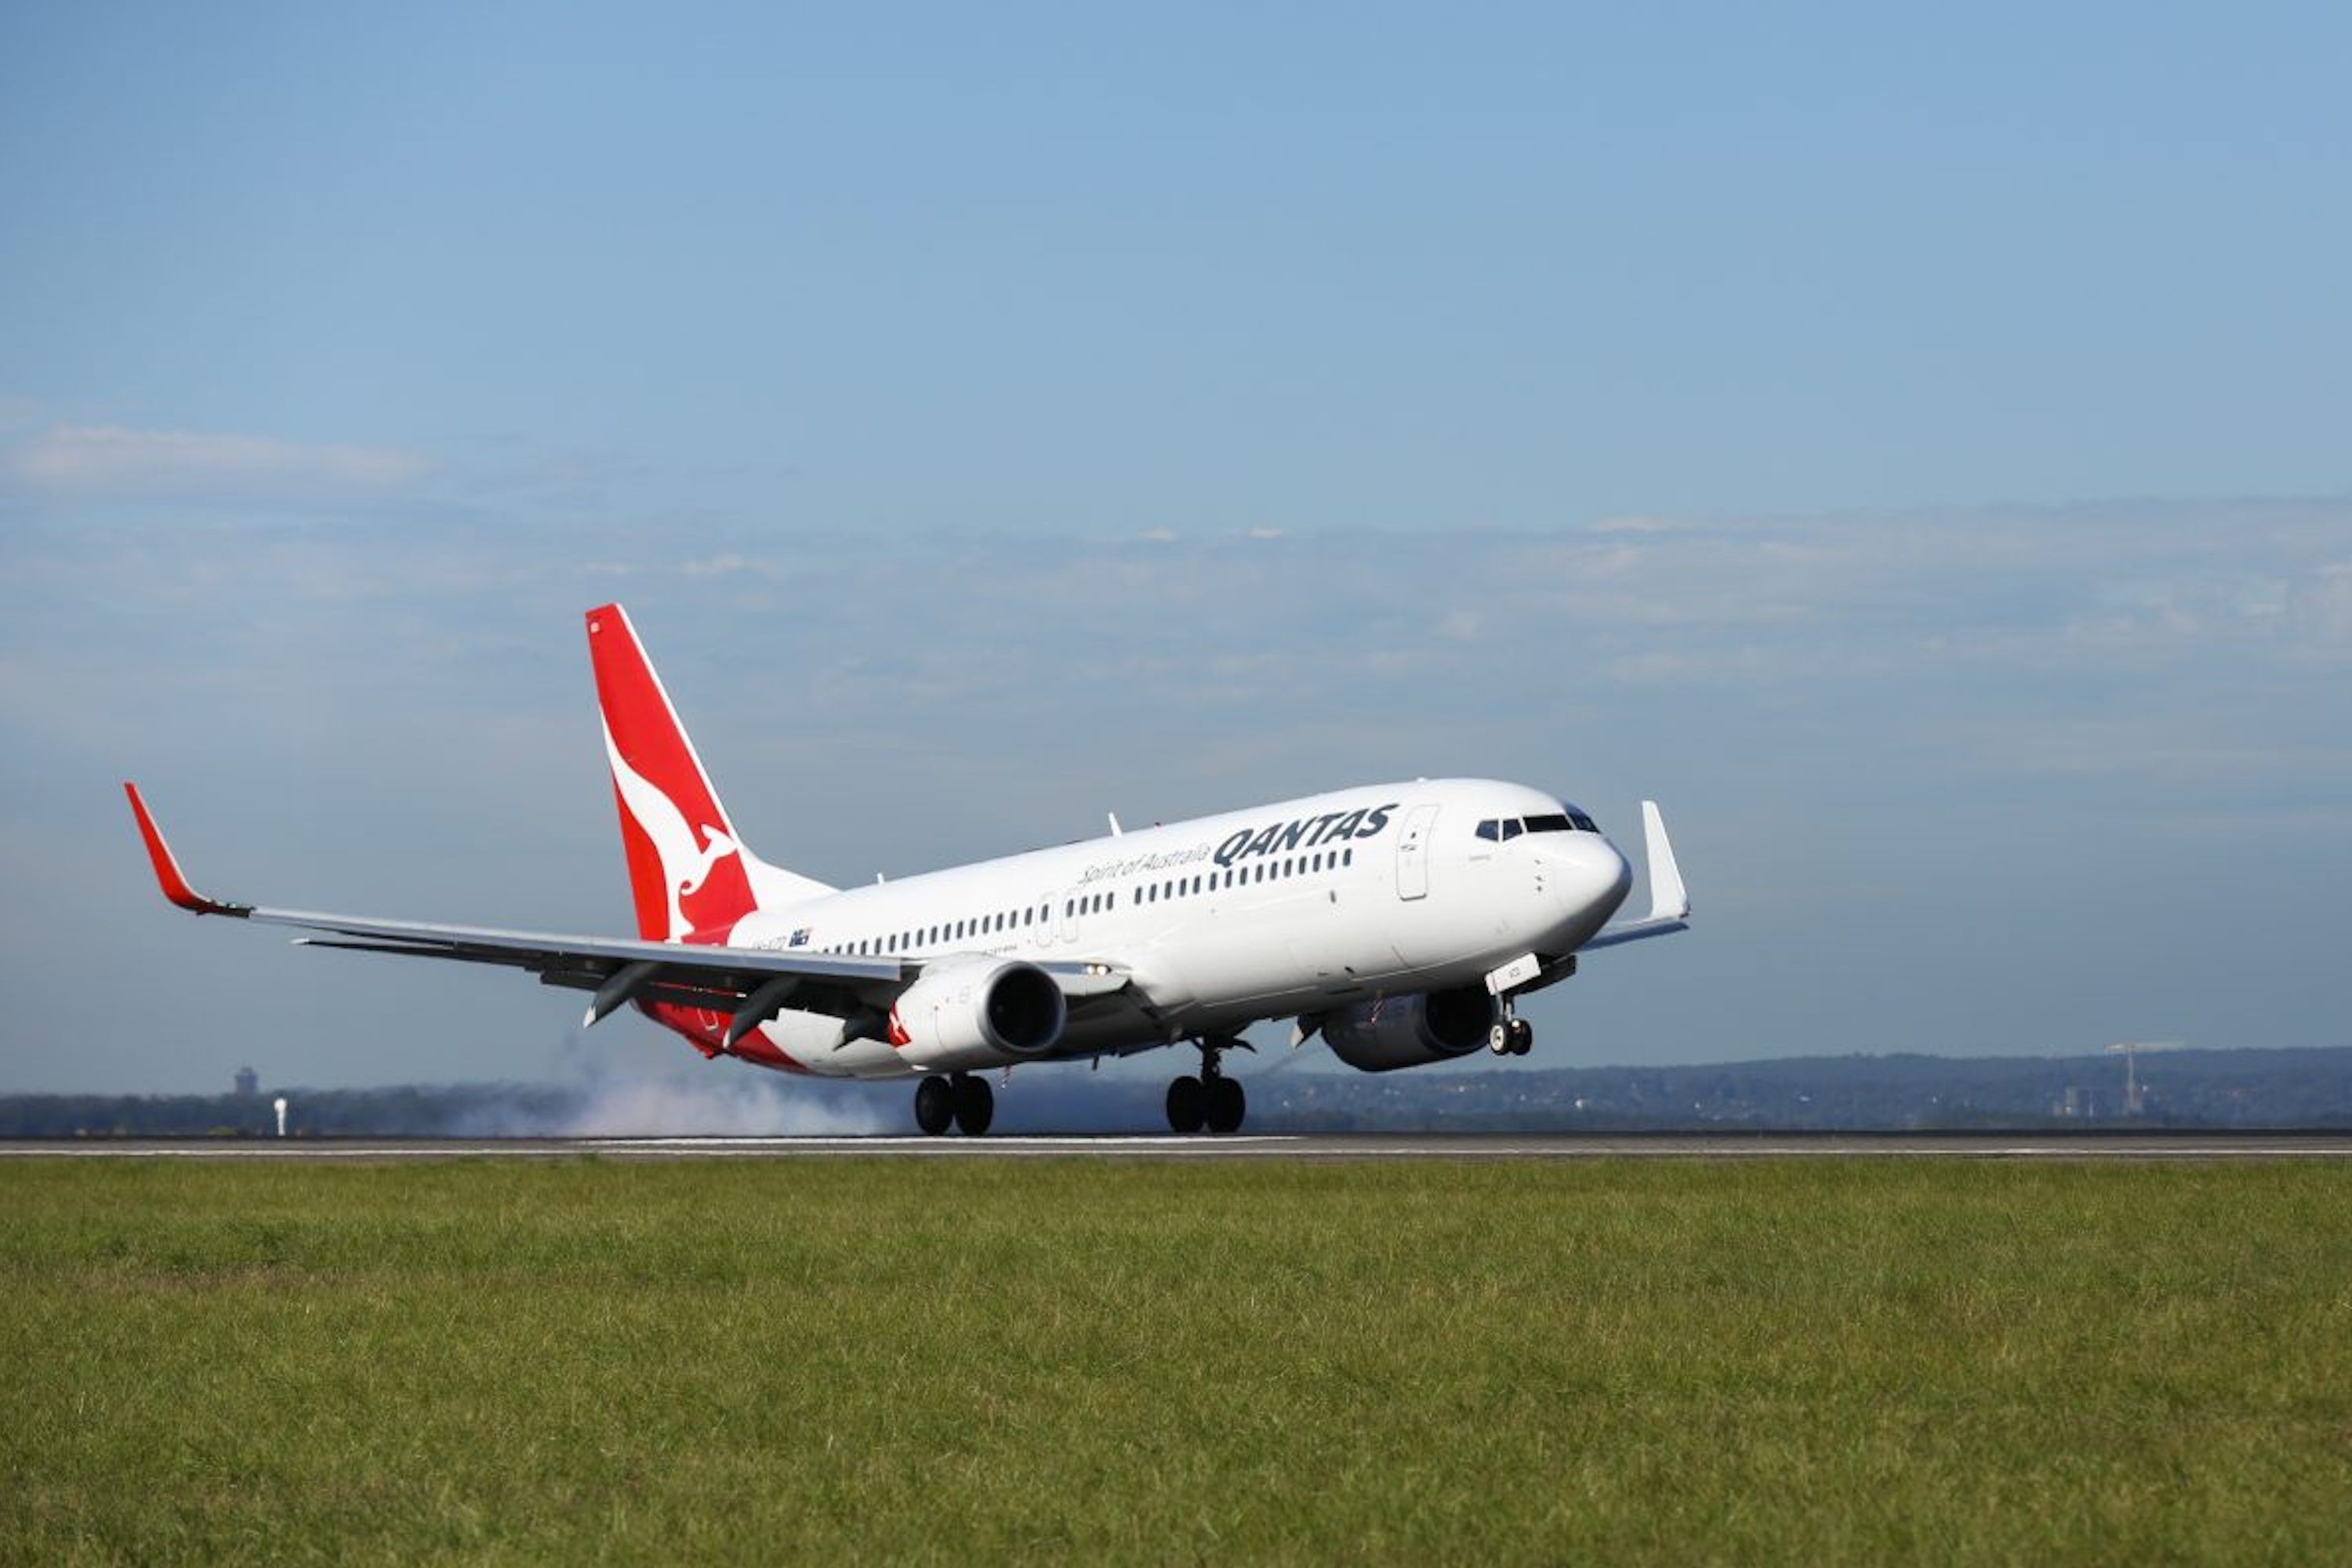 Qantas Boeing 737 landing